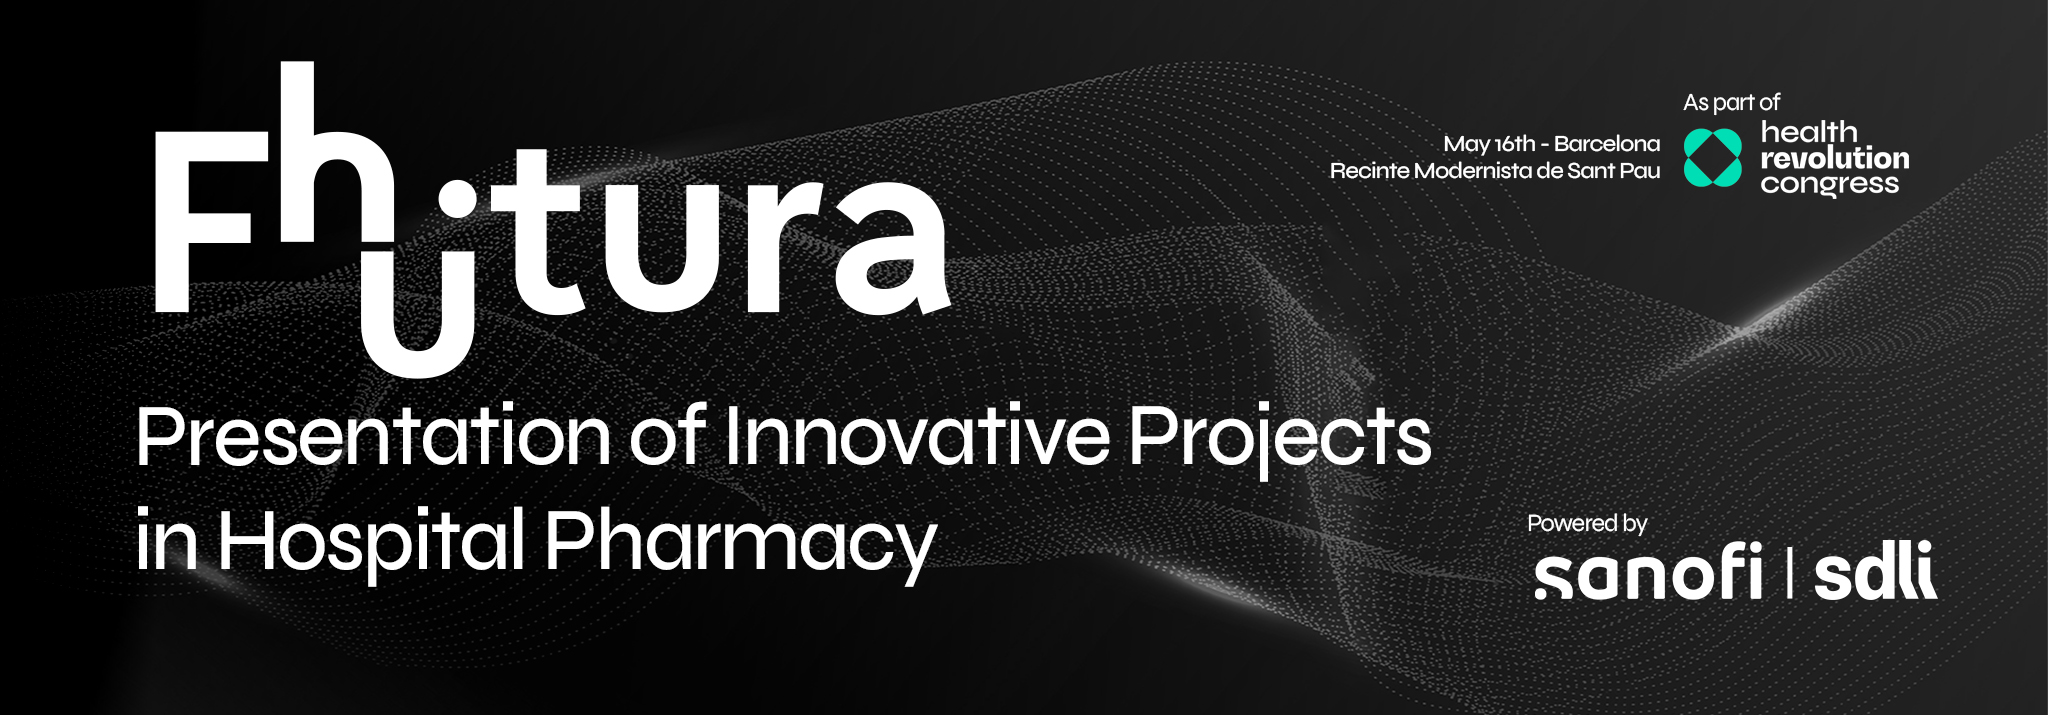 Room Sanofi: Fhutura | Presentation of innovative projects in Hospital Pharmacy